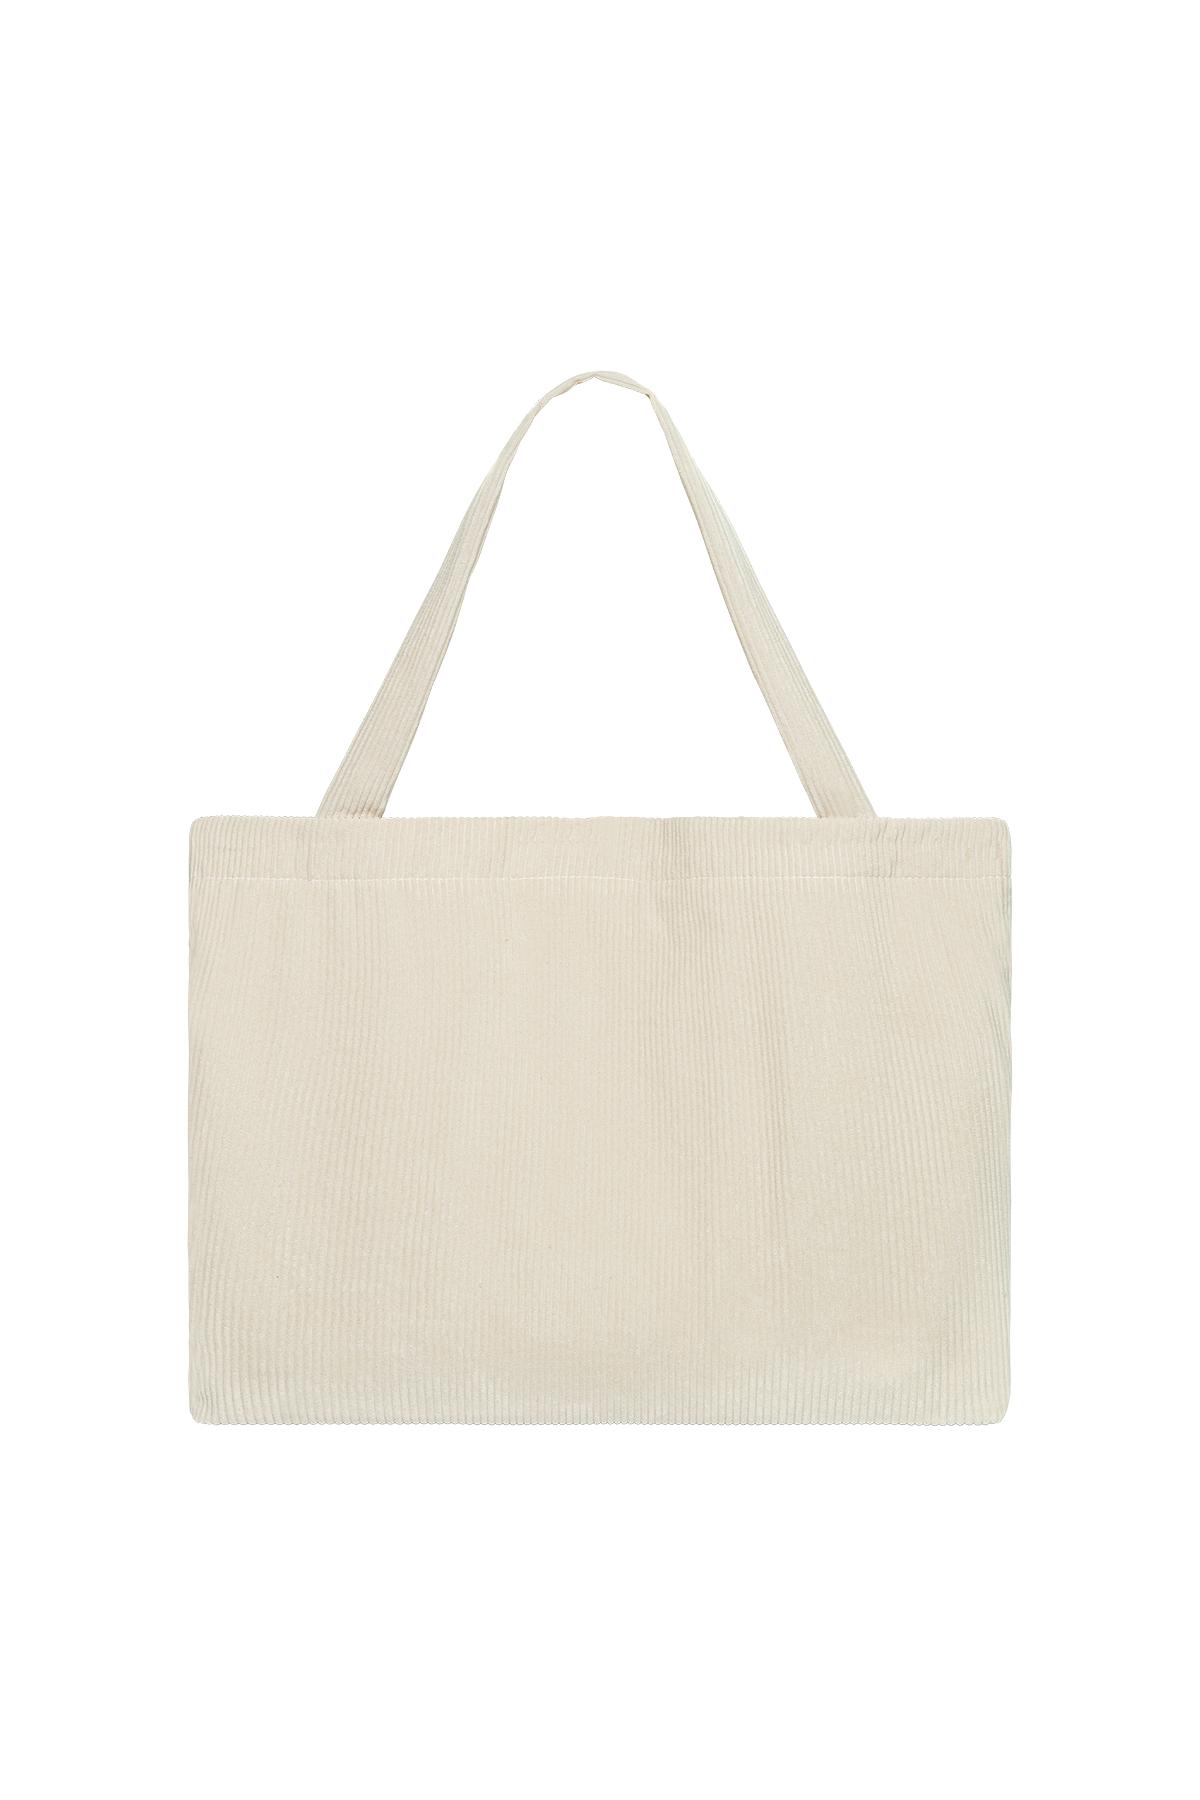 Alışveriş çantası kaburga kumaş Off-white Polyester 